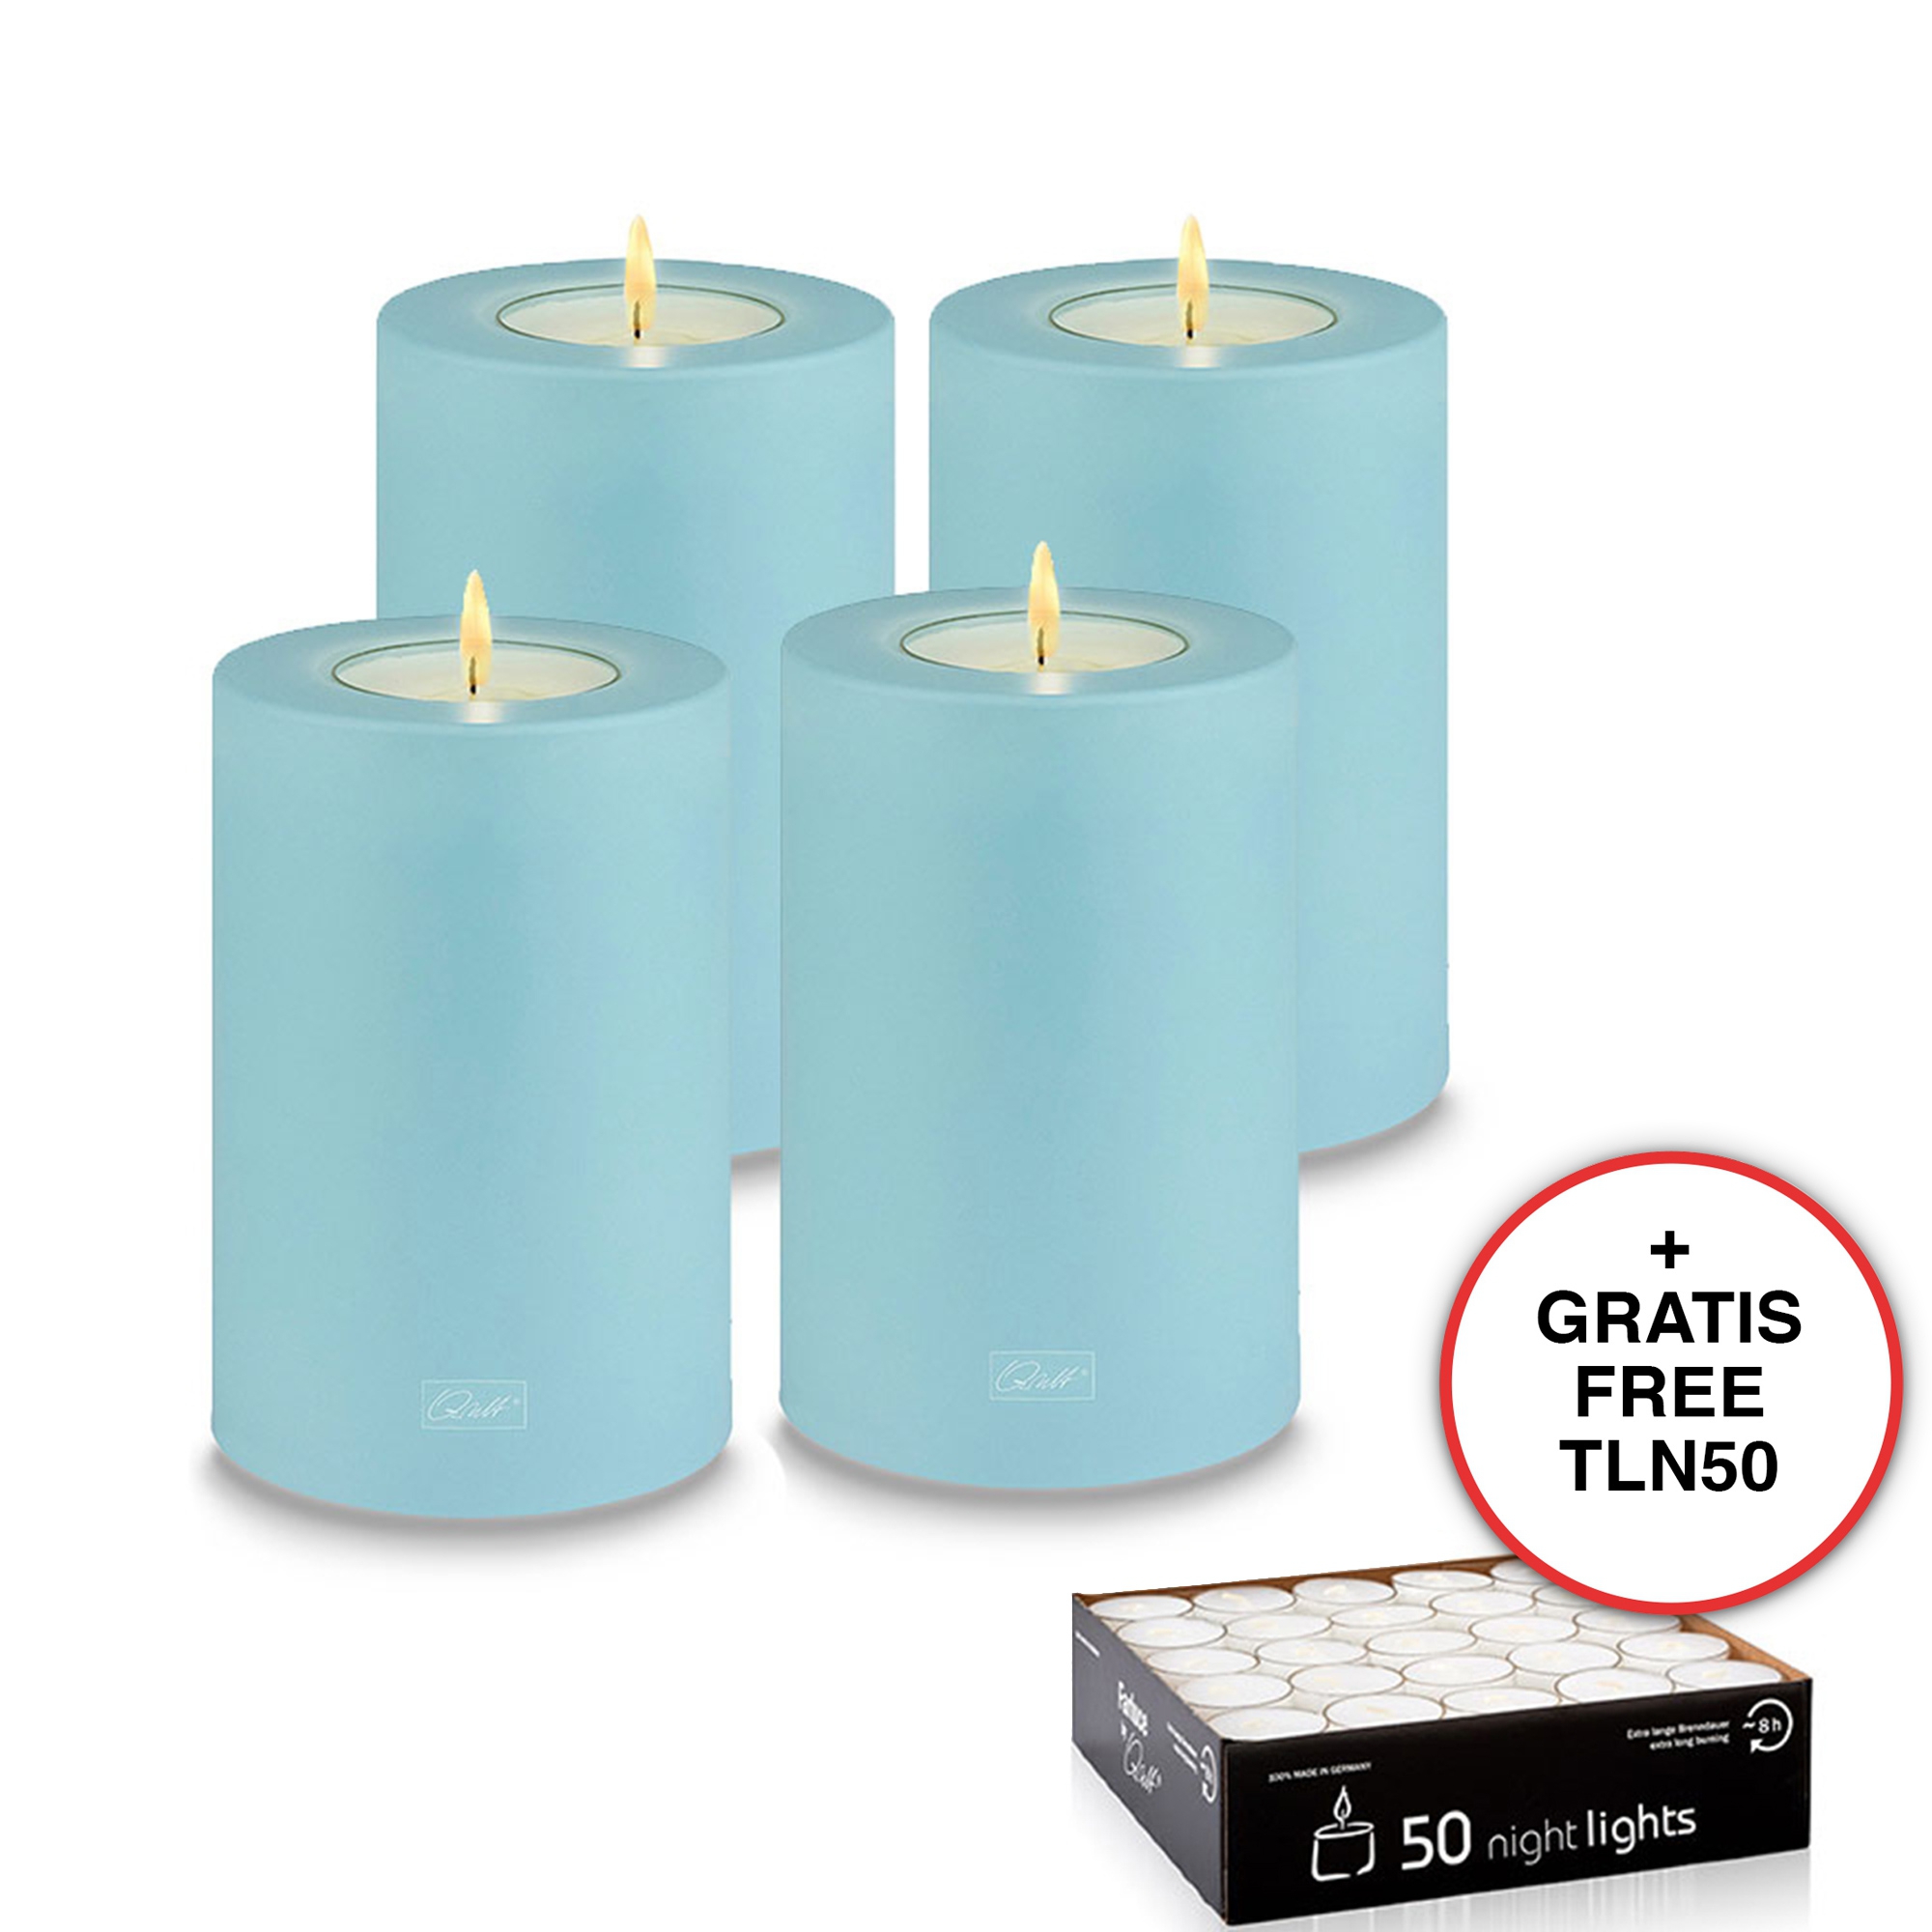 Qult Farluce Trend - Teelichthalter in Kerzenform - Clearwater - Ø 8 cm H 12 cm - 4er Set